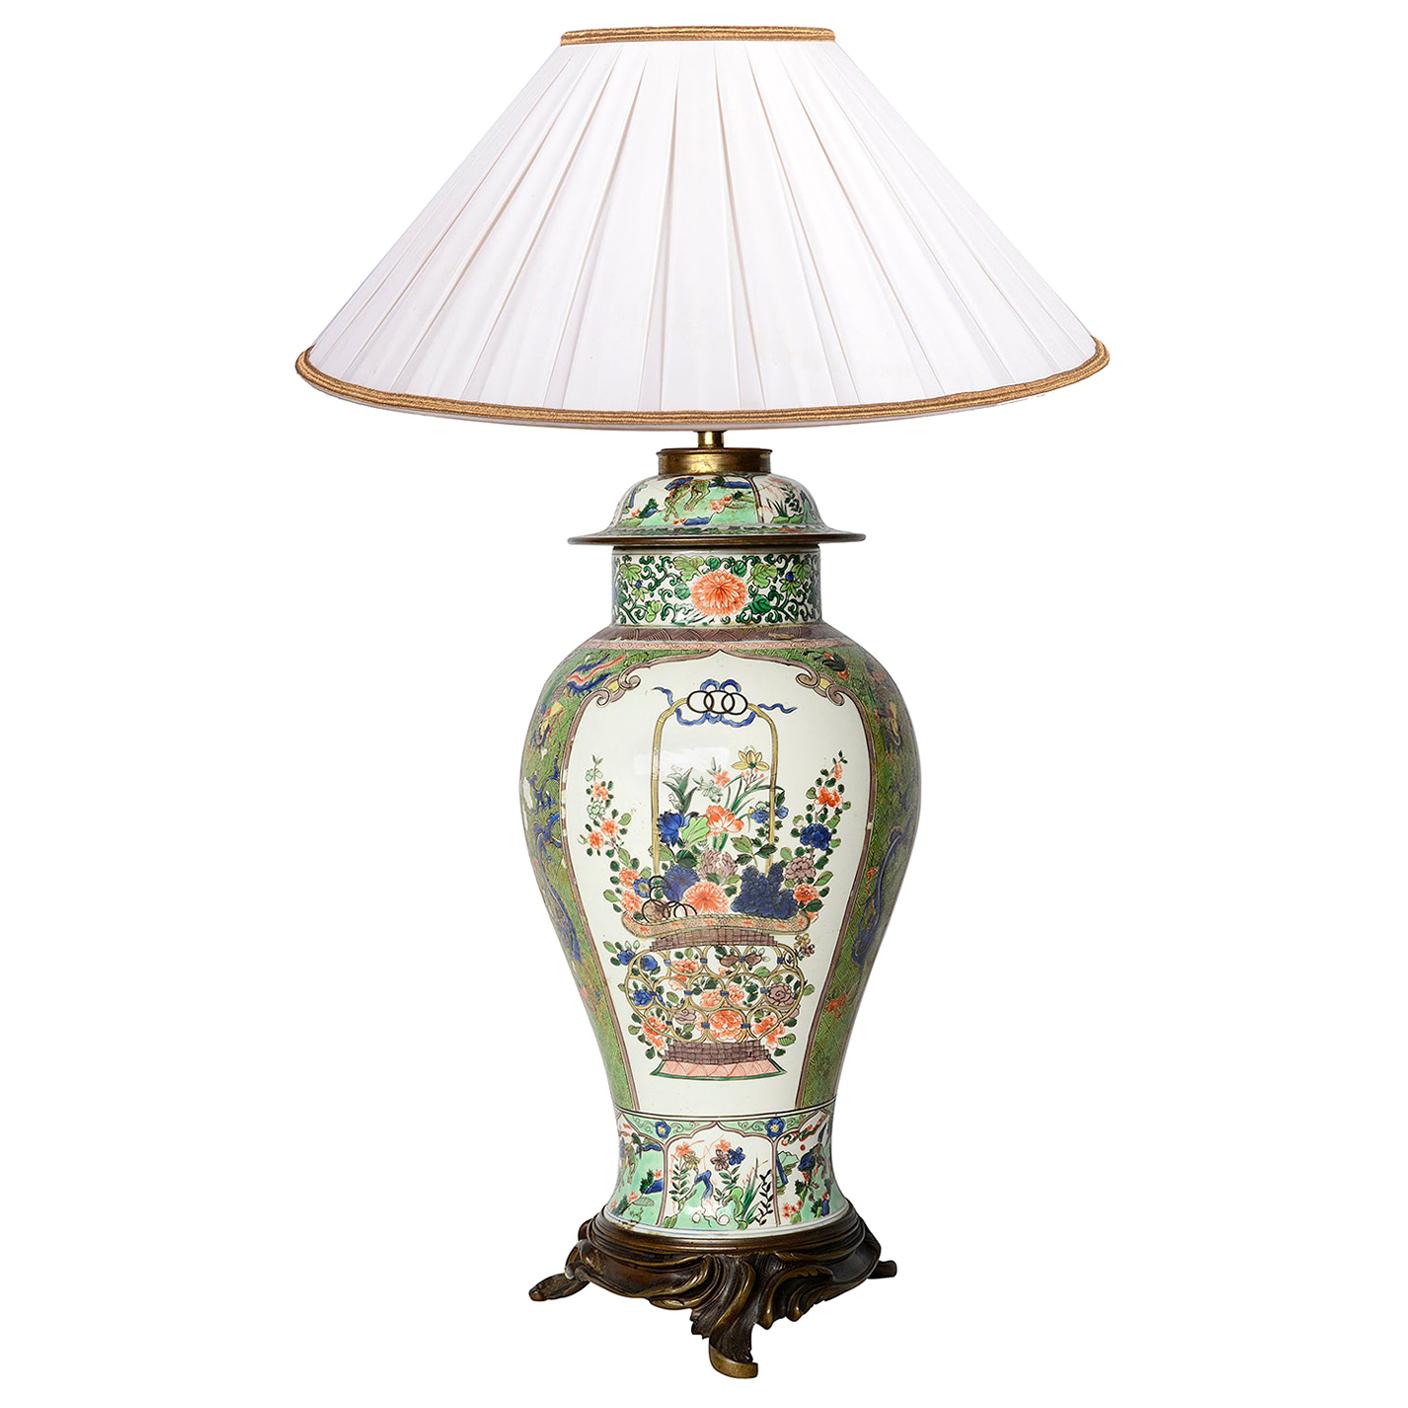 Early 19th Century Samson Famille Verte Style Lidded Vase / Lamp For Sale